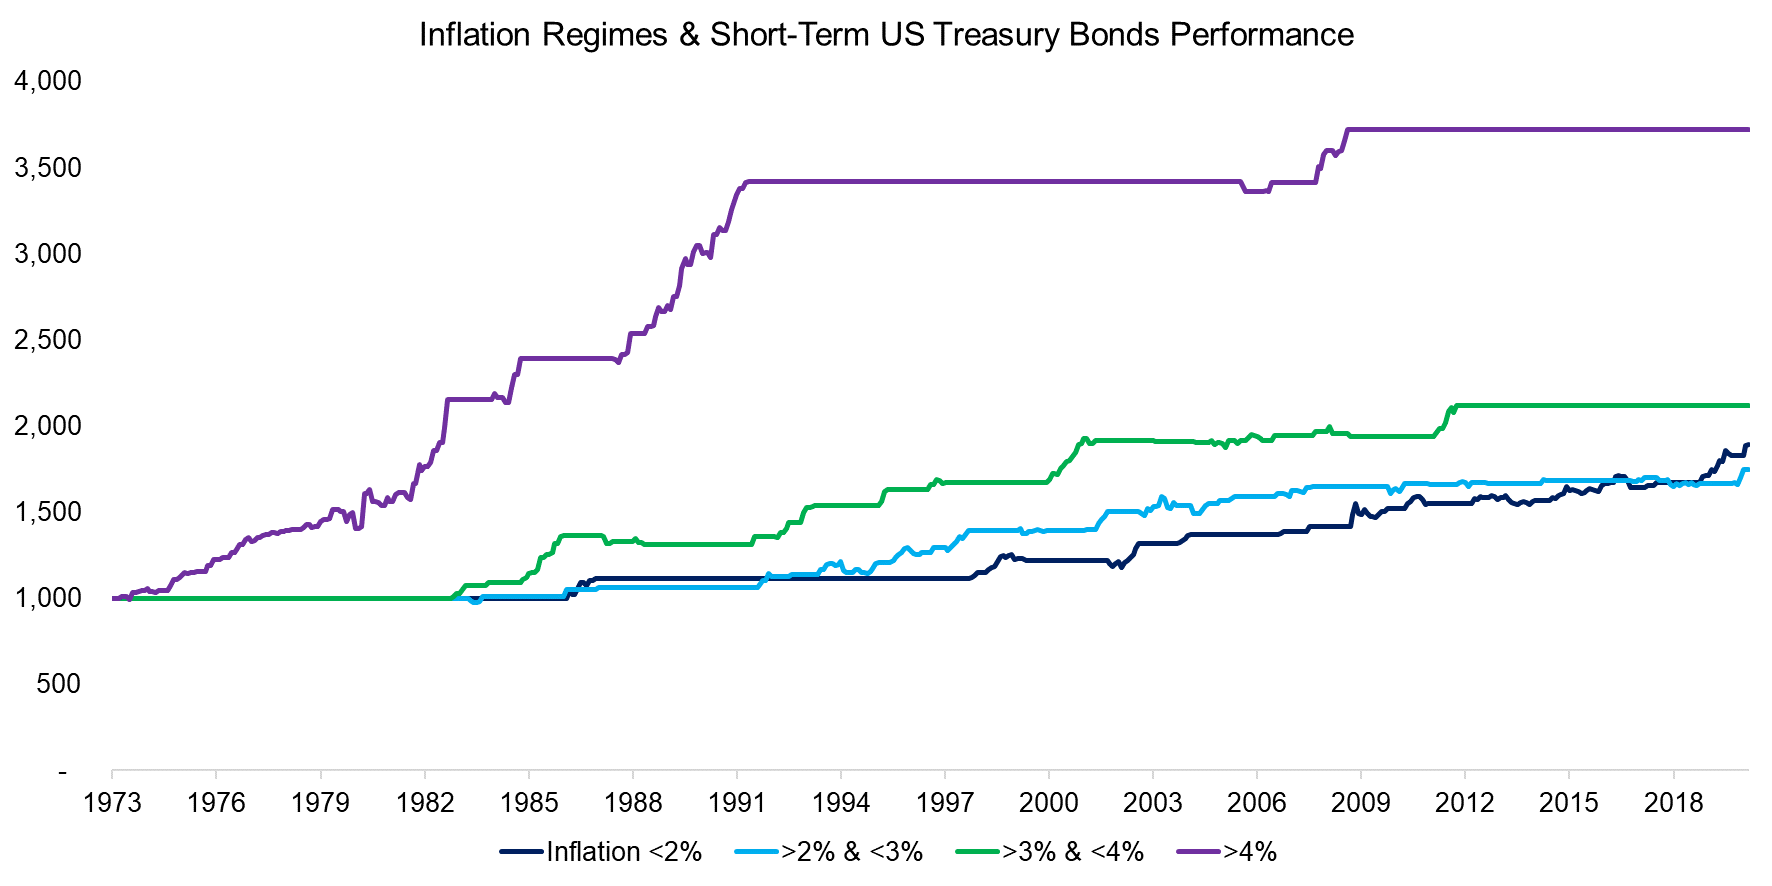 Inflation Regimes & US Treasury Bond Performance